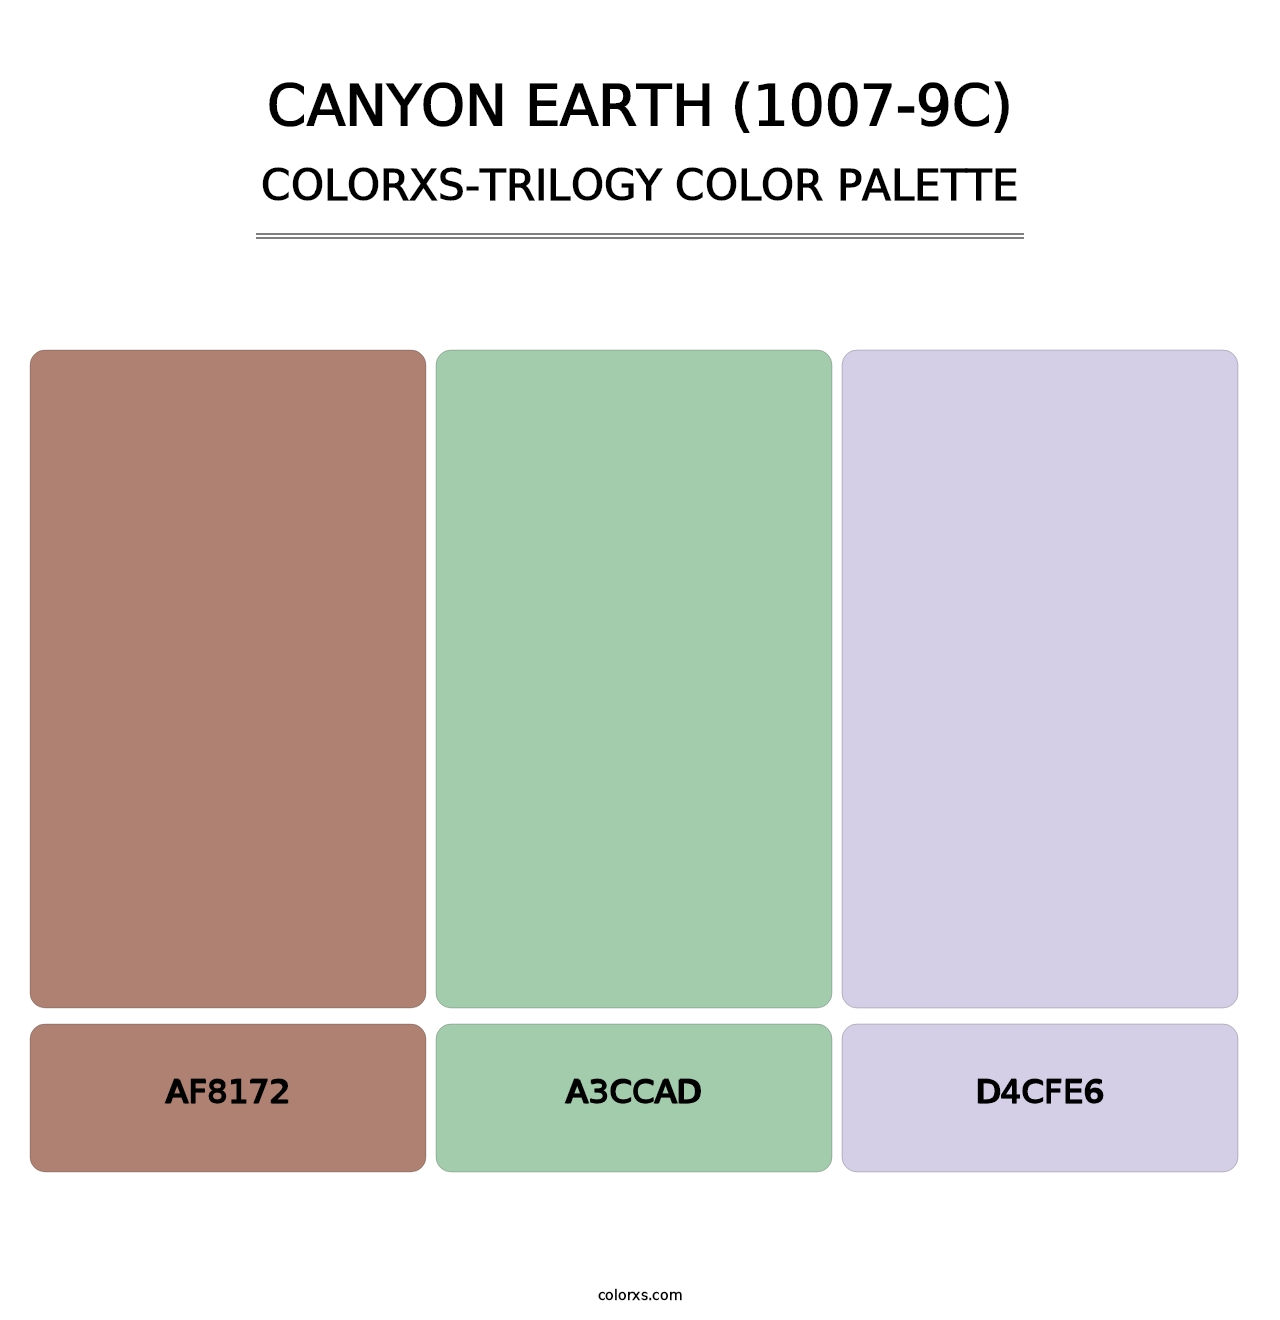 Canyon Earth (1007-9C) - Colorxs Trilogy Palette